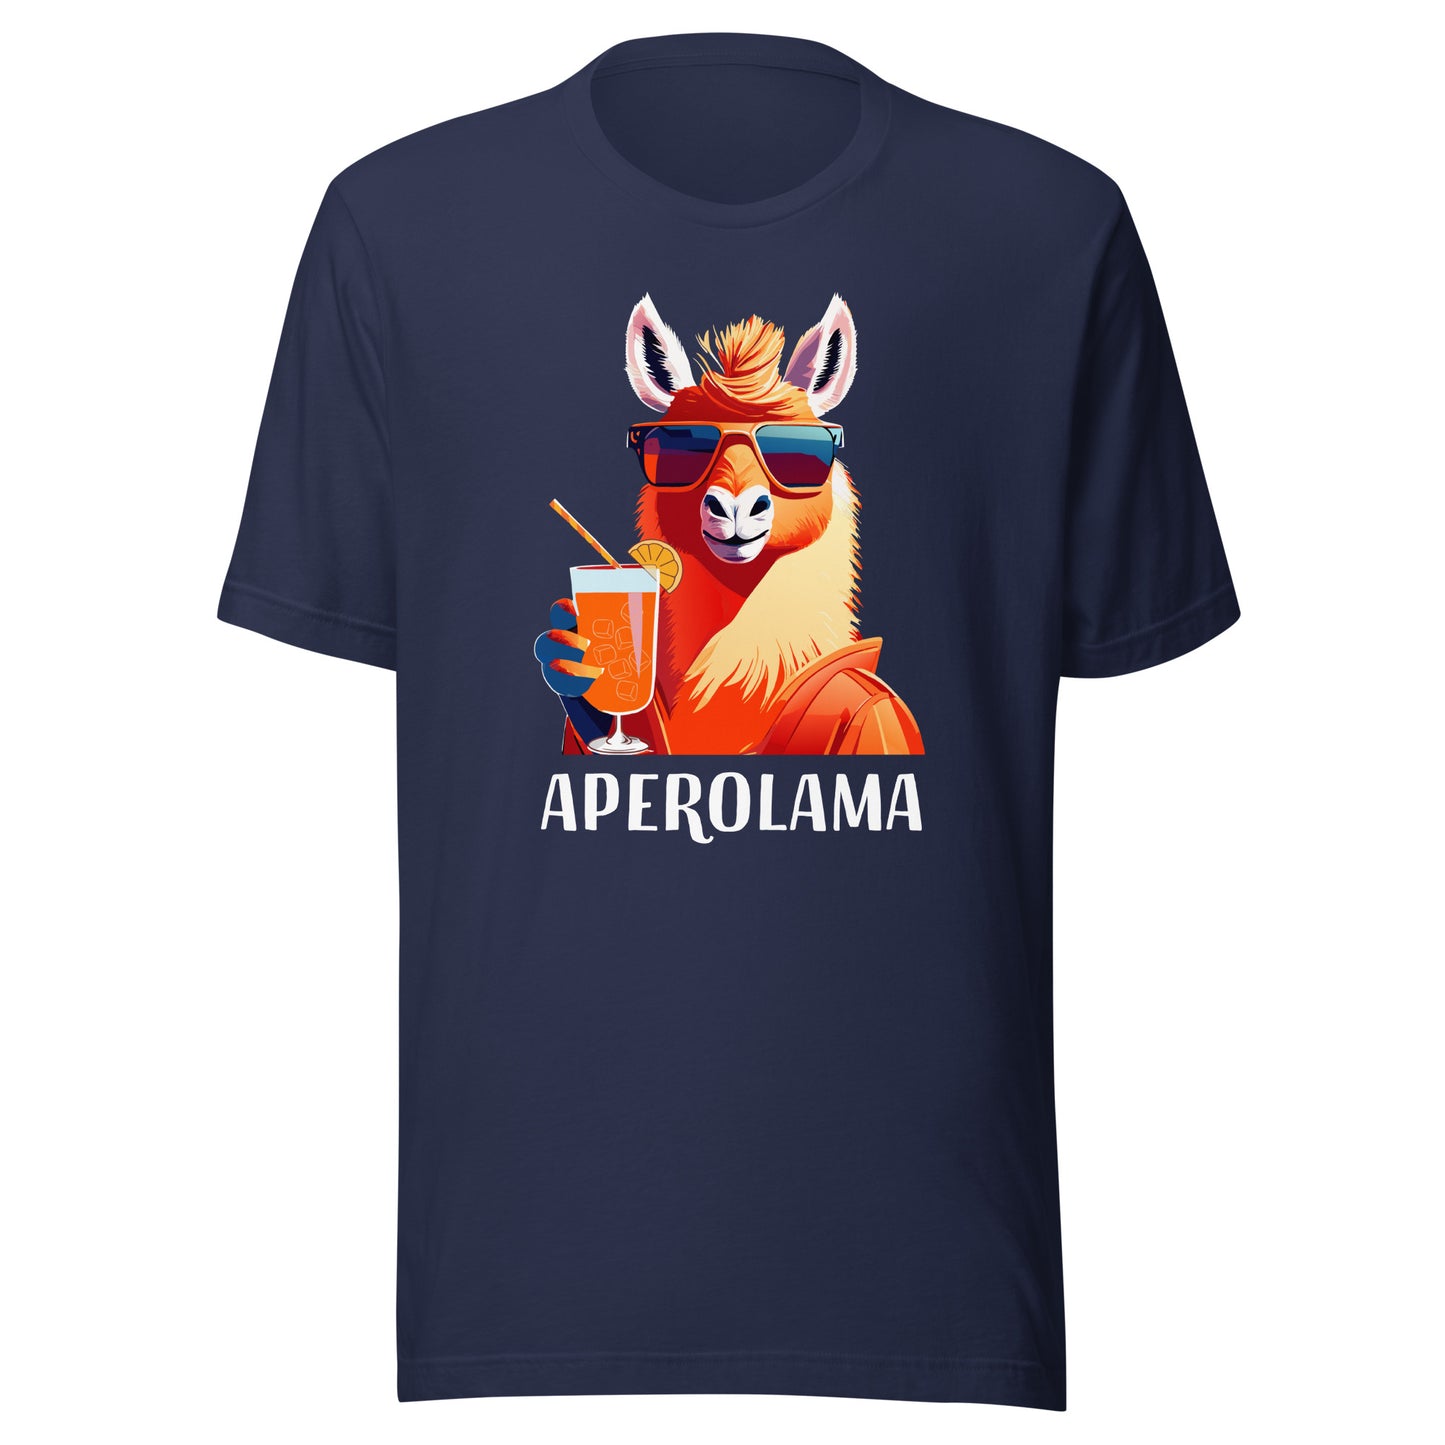 APEROLAMA - printed T-shirt 